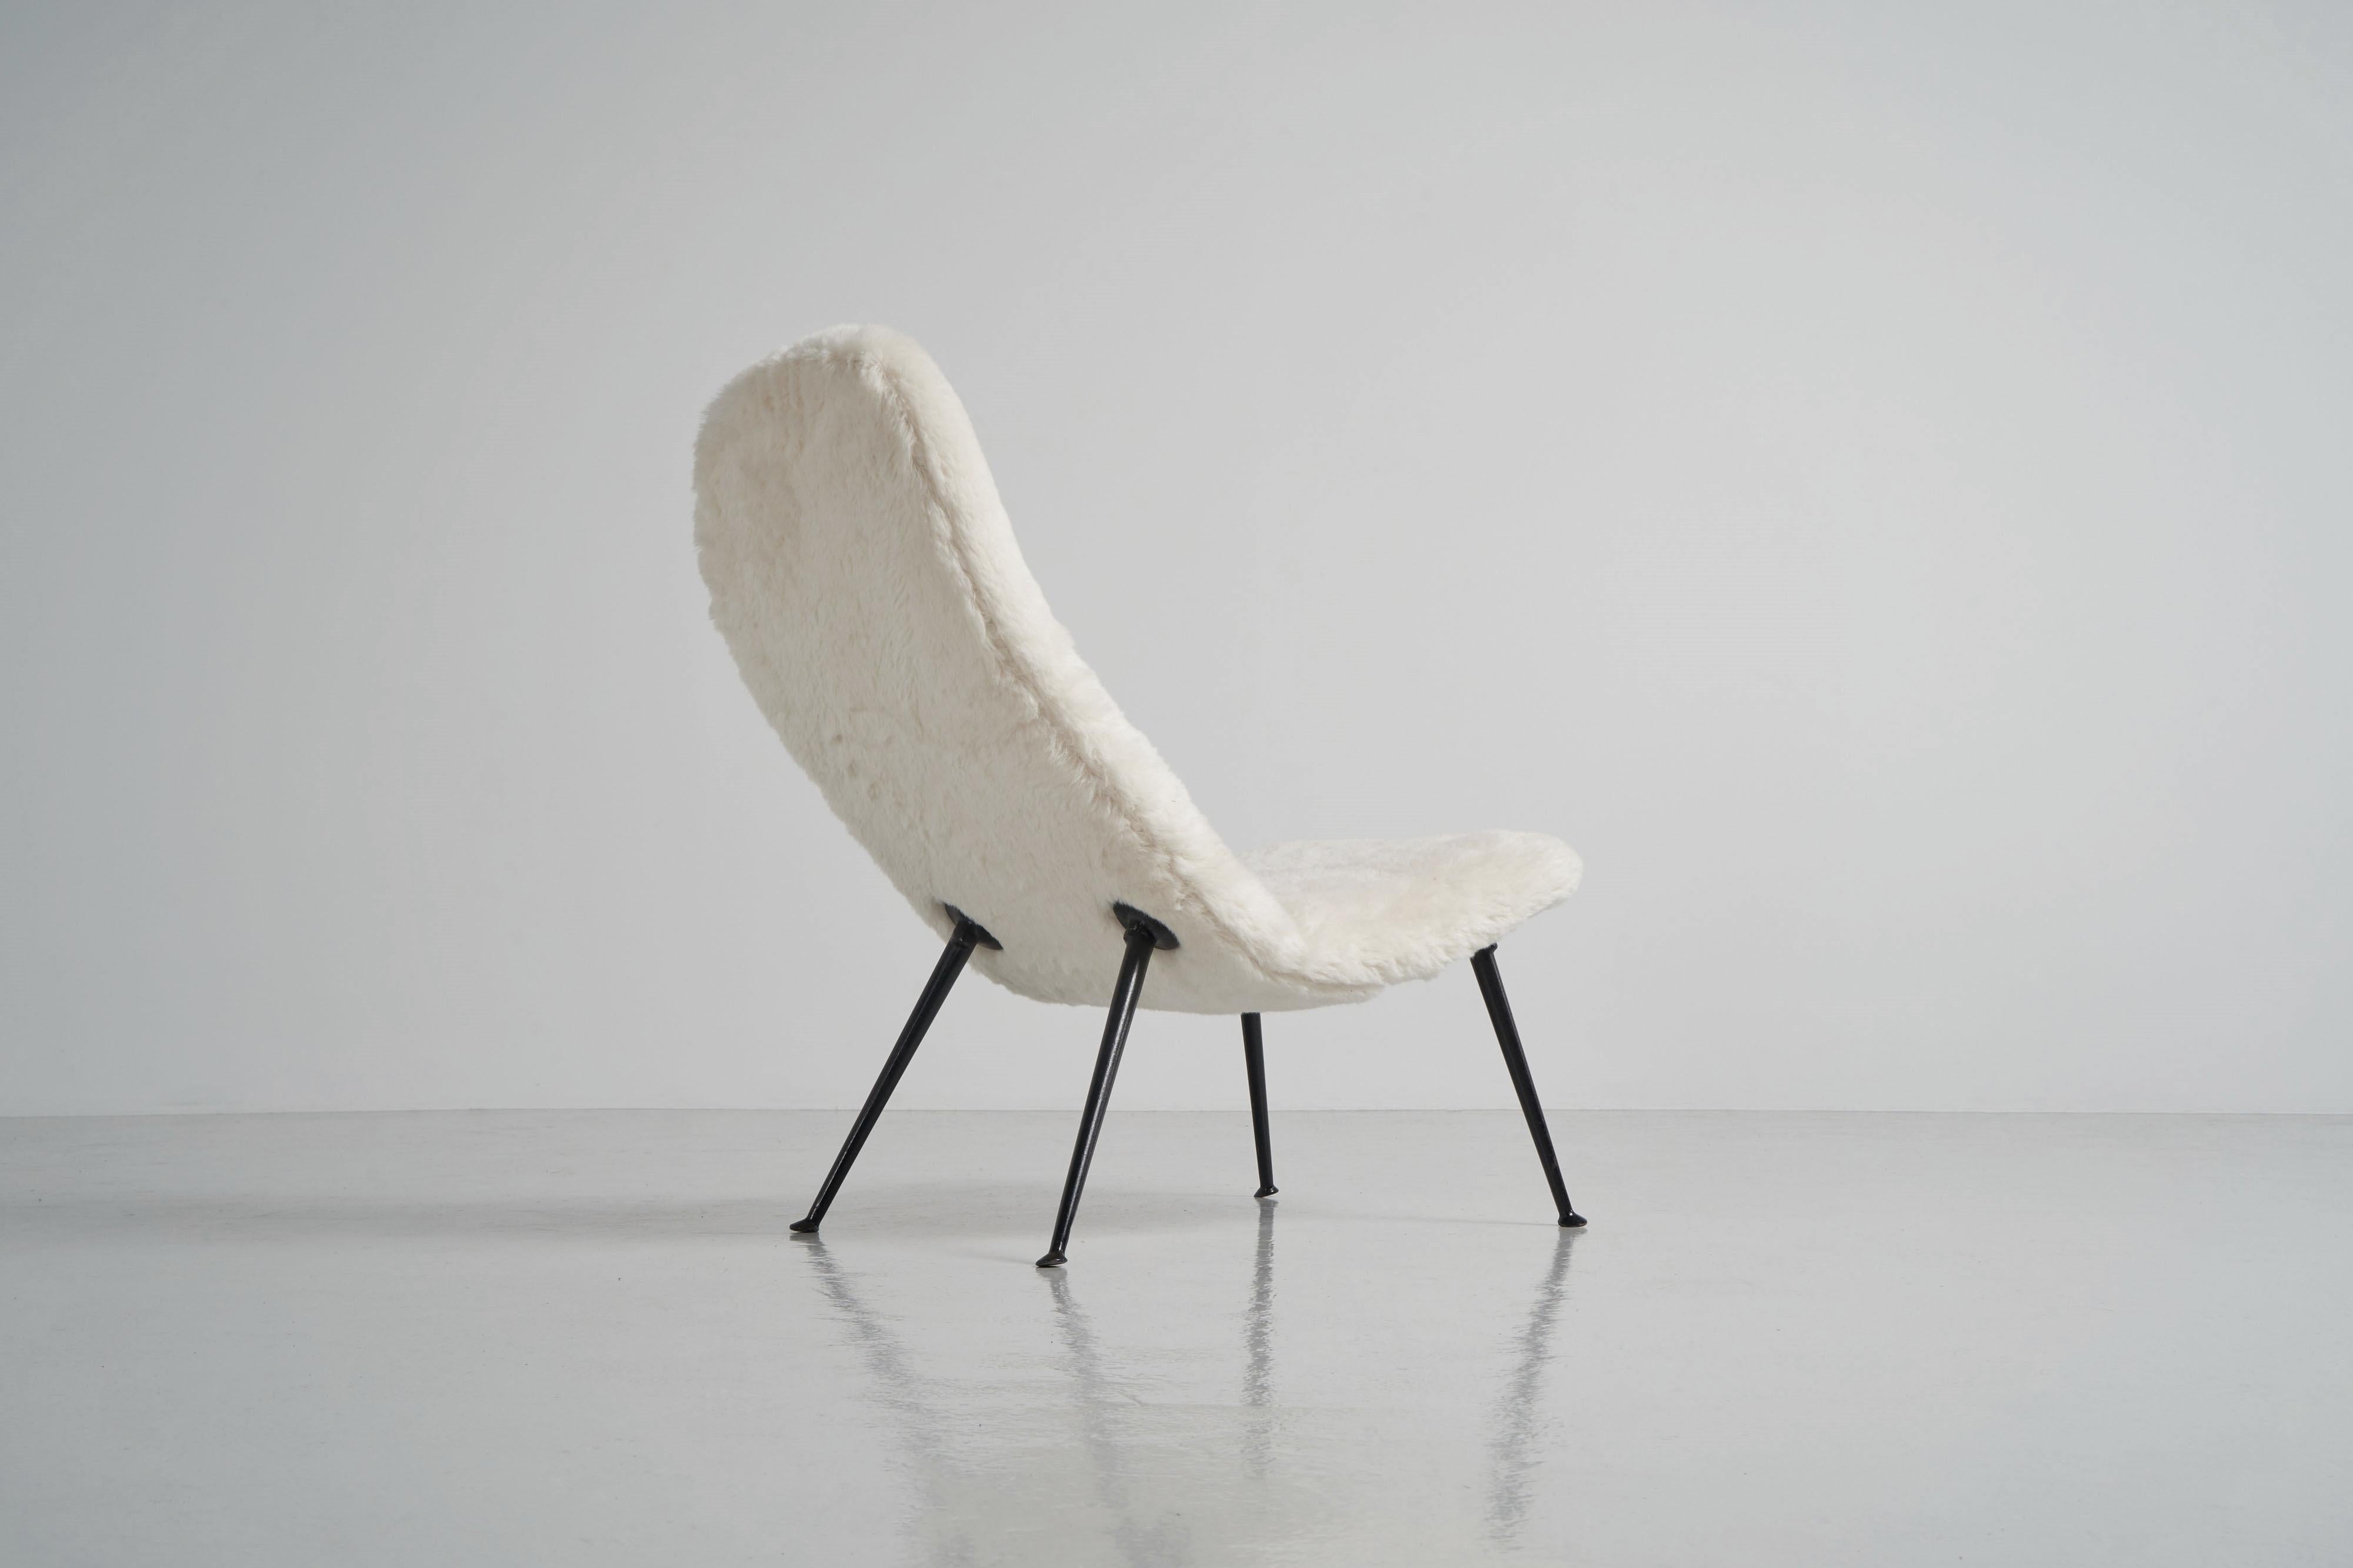 Der Loungesessel Modell 135 von Theo Ruth, der 1956 für Artifort entworfen wurde, ist ein klassisches und elegantes Möbelstück. Mit seinen klaren Linien und seiner schlanken Silhouette ist er das perfekte Beispiel für den Modernismus der 1950er